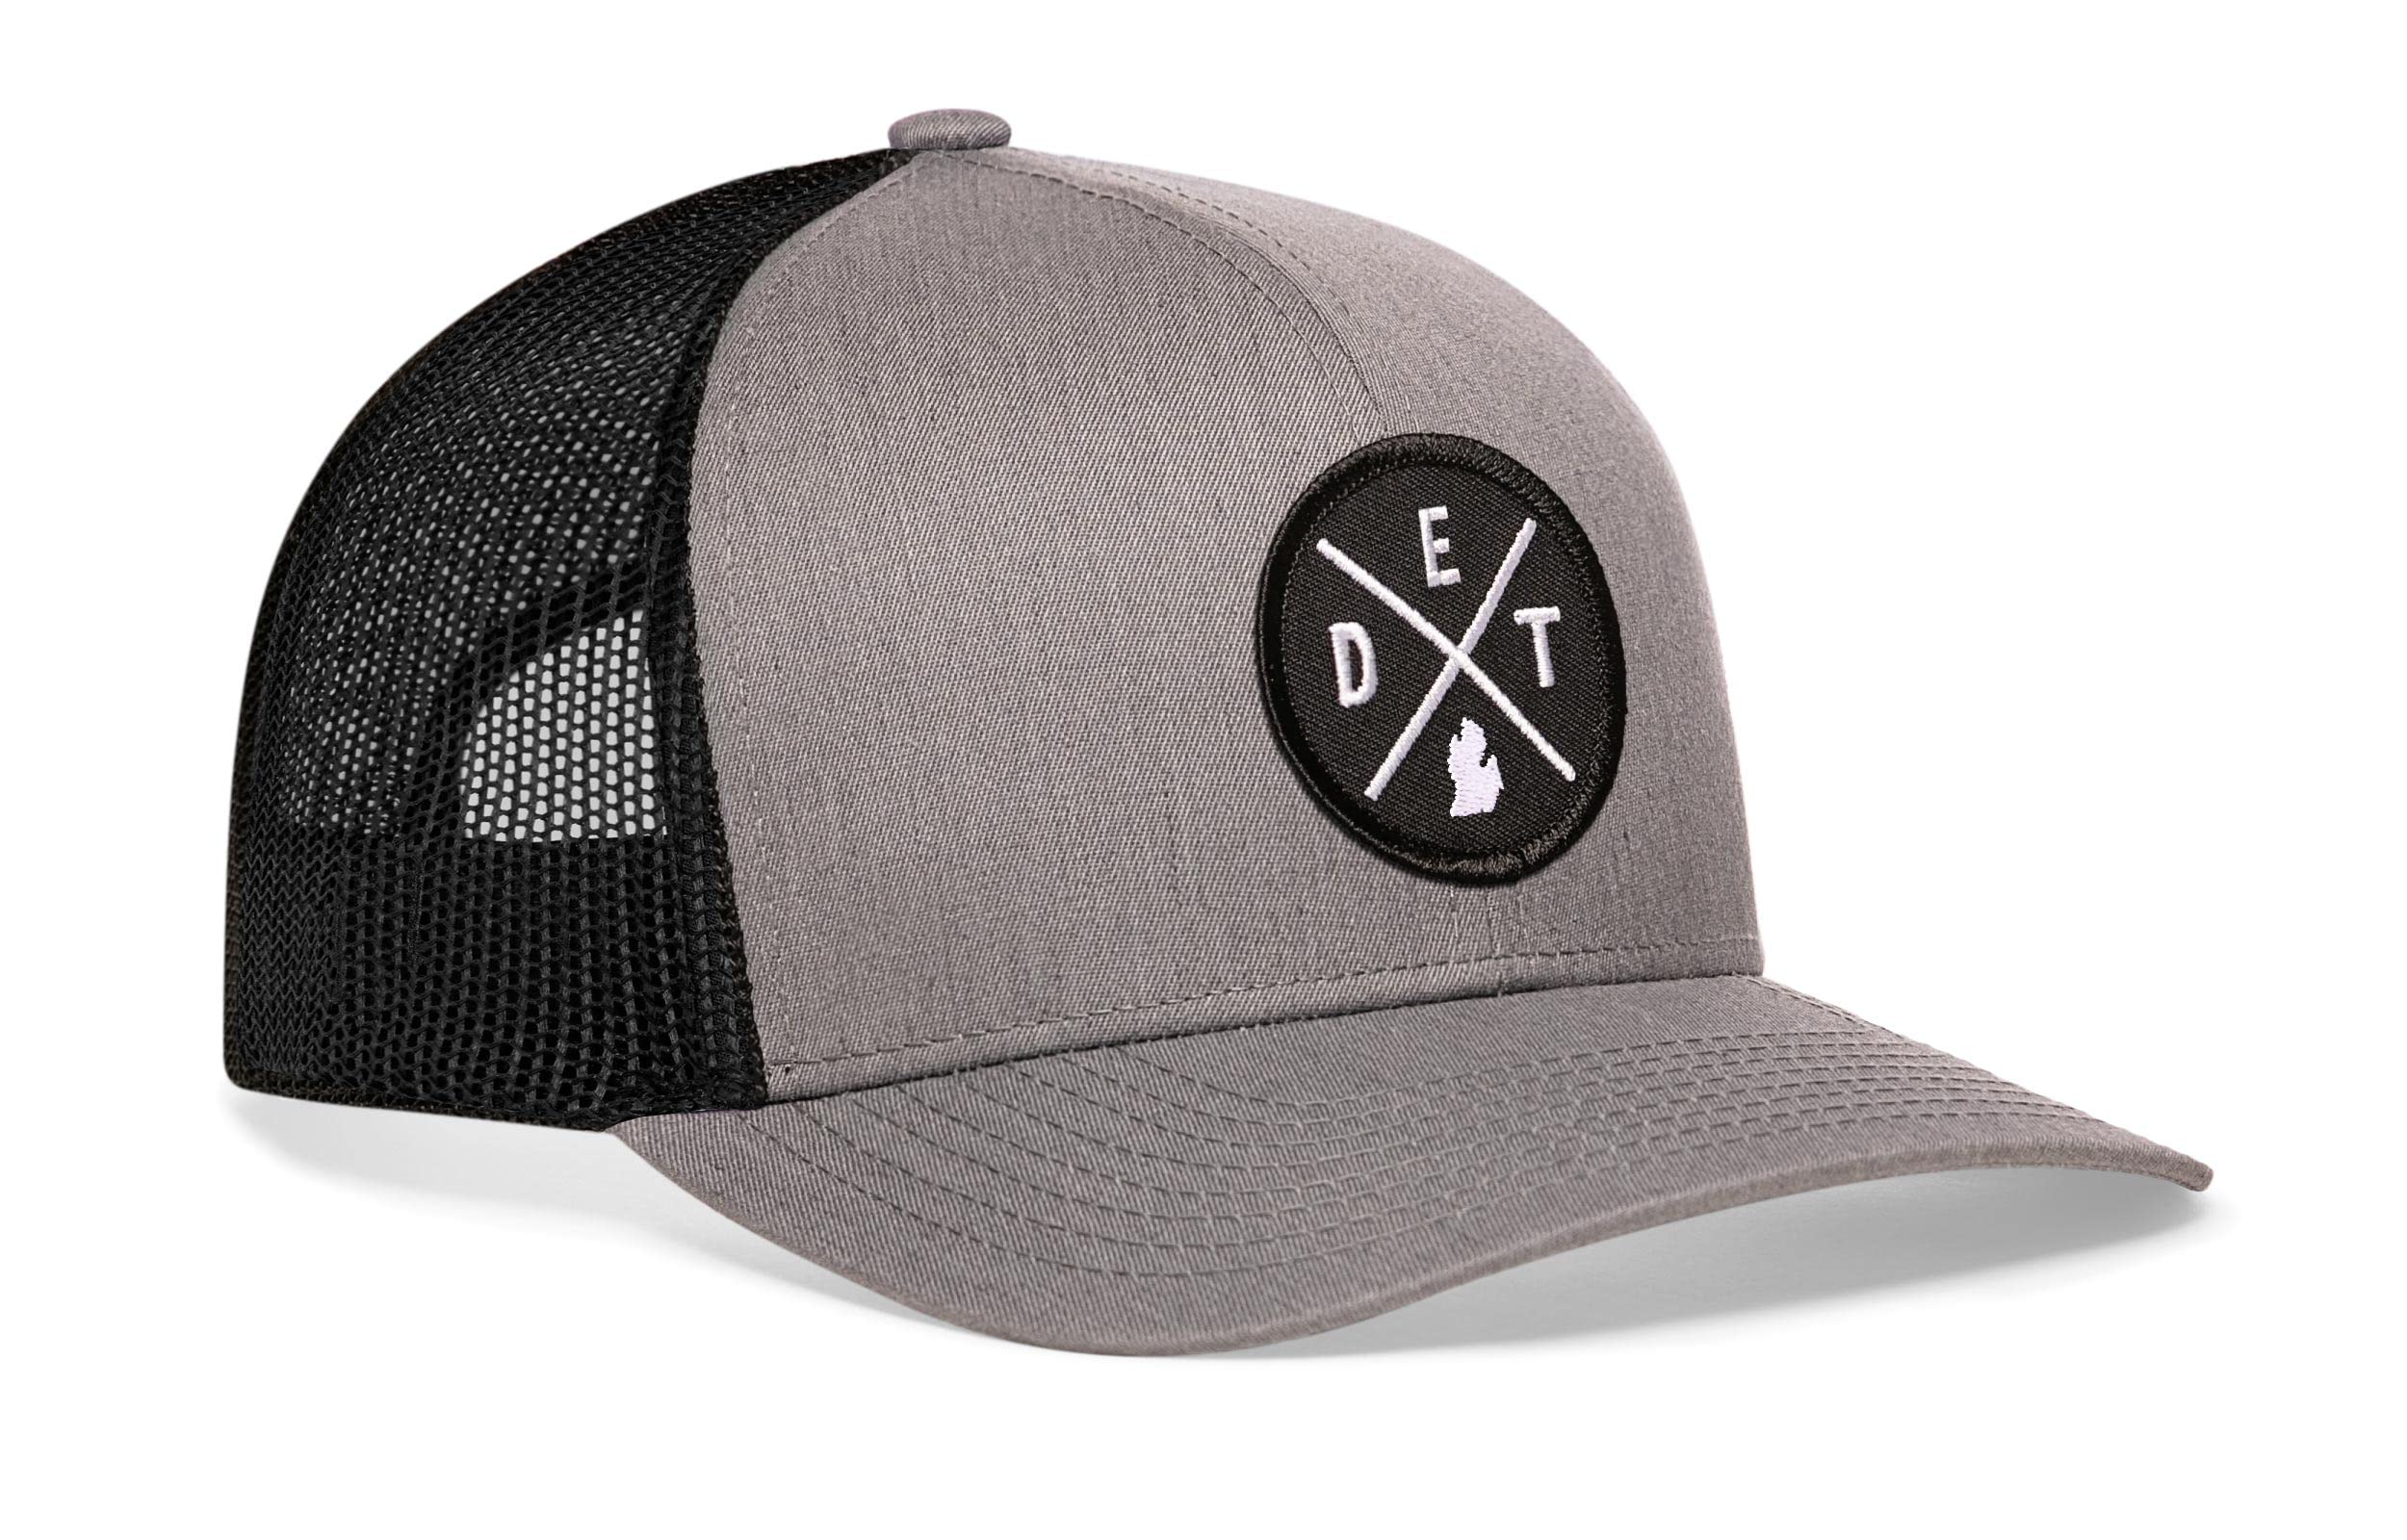 HAKA DET City Trucker Hat, Detroit Hat for Men & Women, Adjustable Baseball Hat, Mesh Snapback, Sturdy Outdoor Black Golf Hat (G